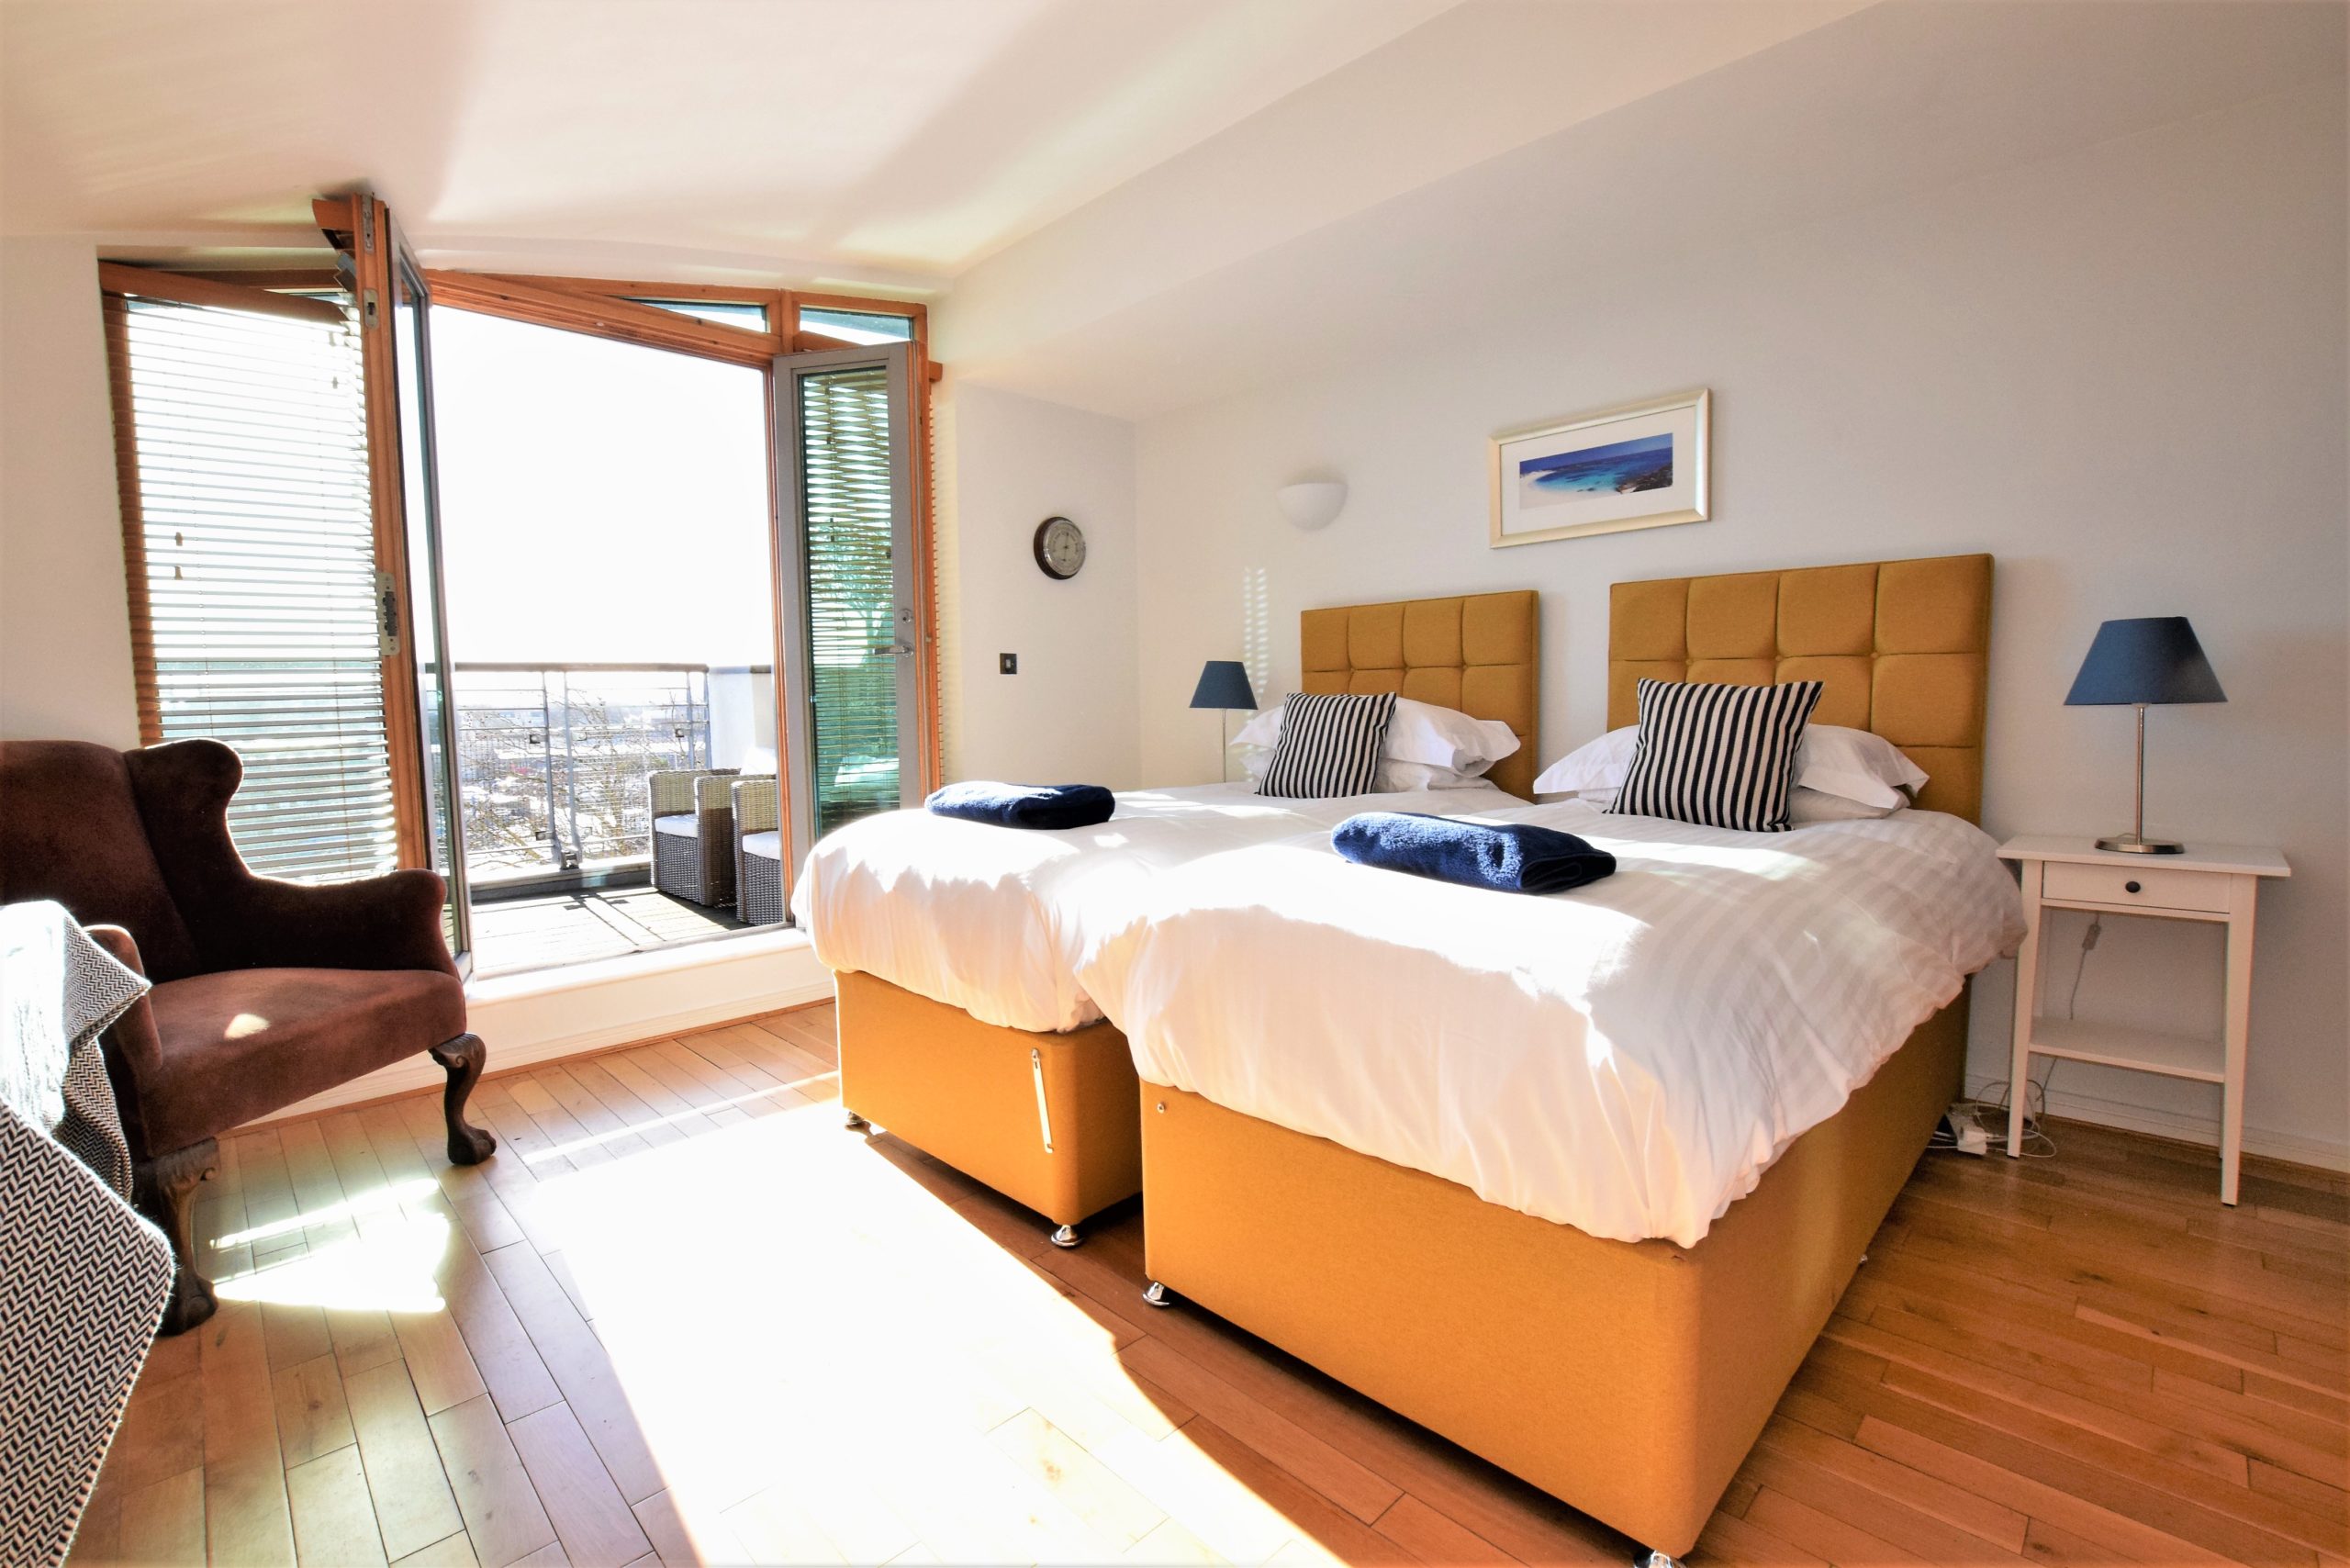 Your Apartment - Serviced apartments Bristol - Short term lets Bristol